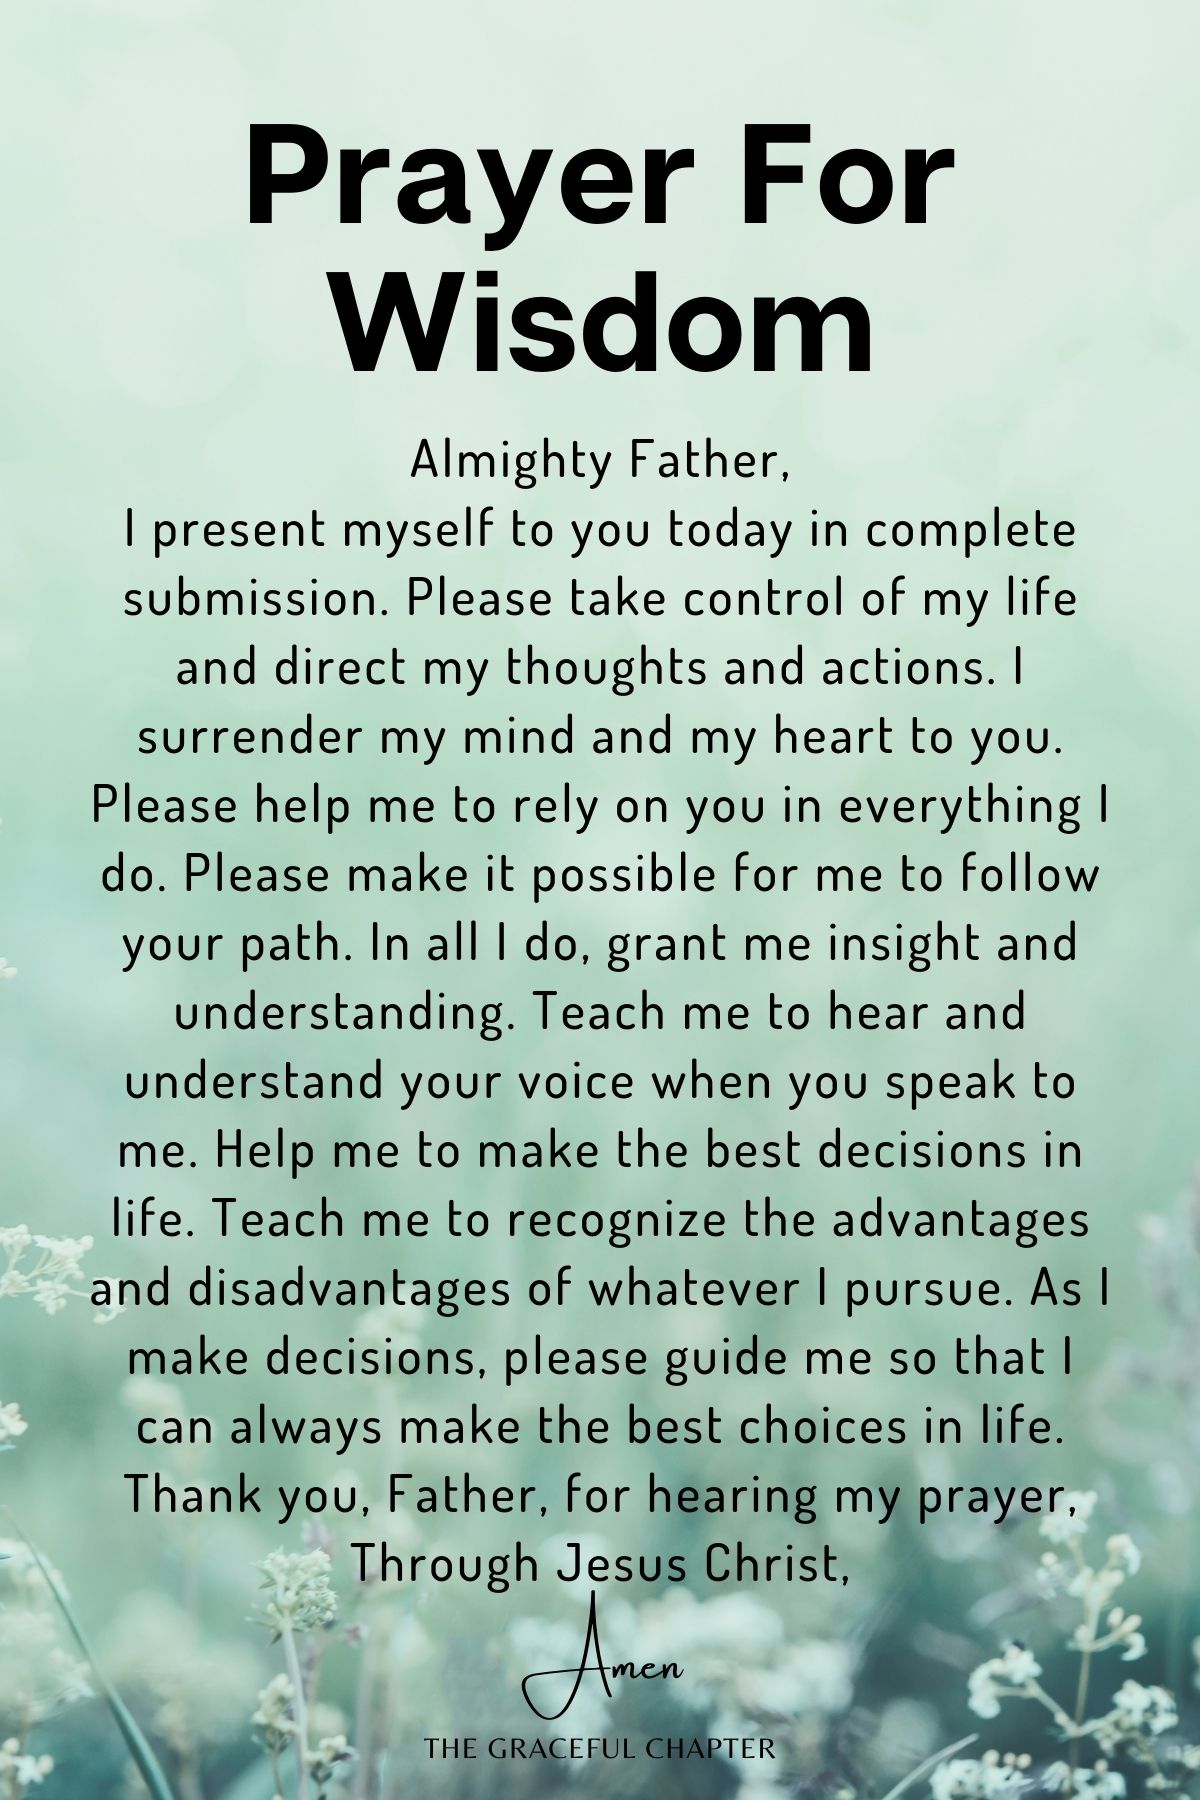 Prayer for wisdom